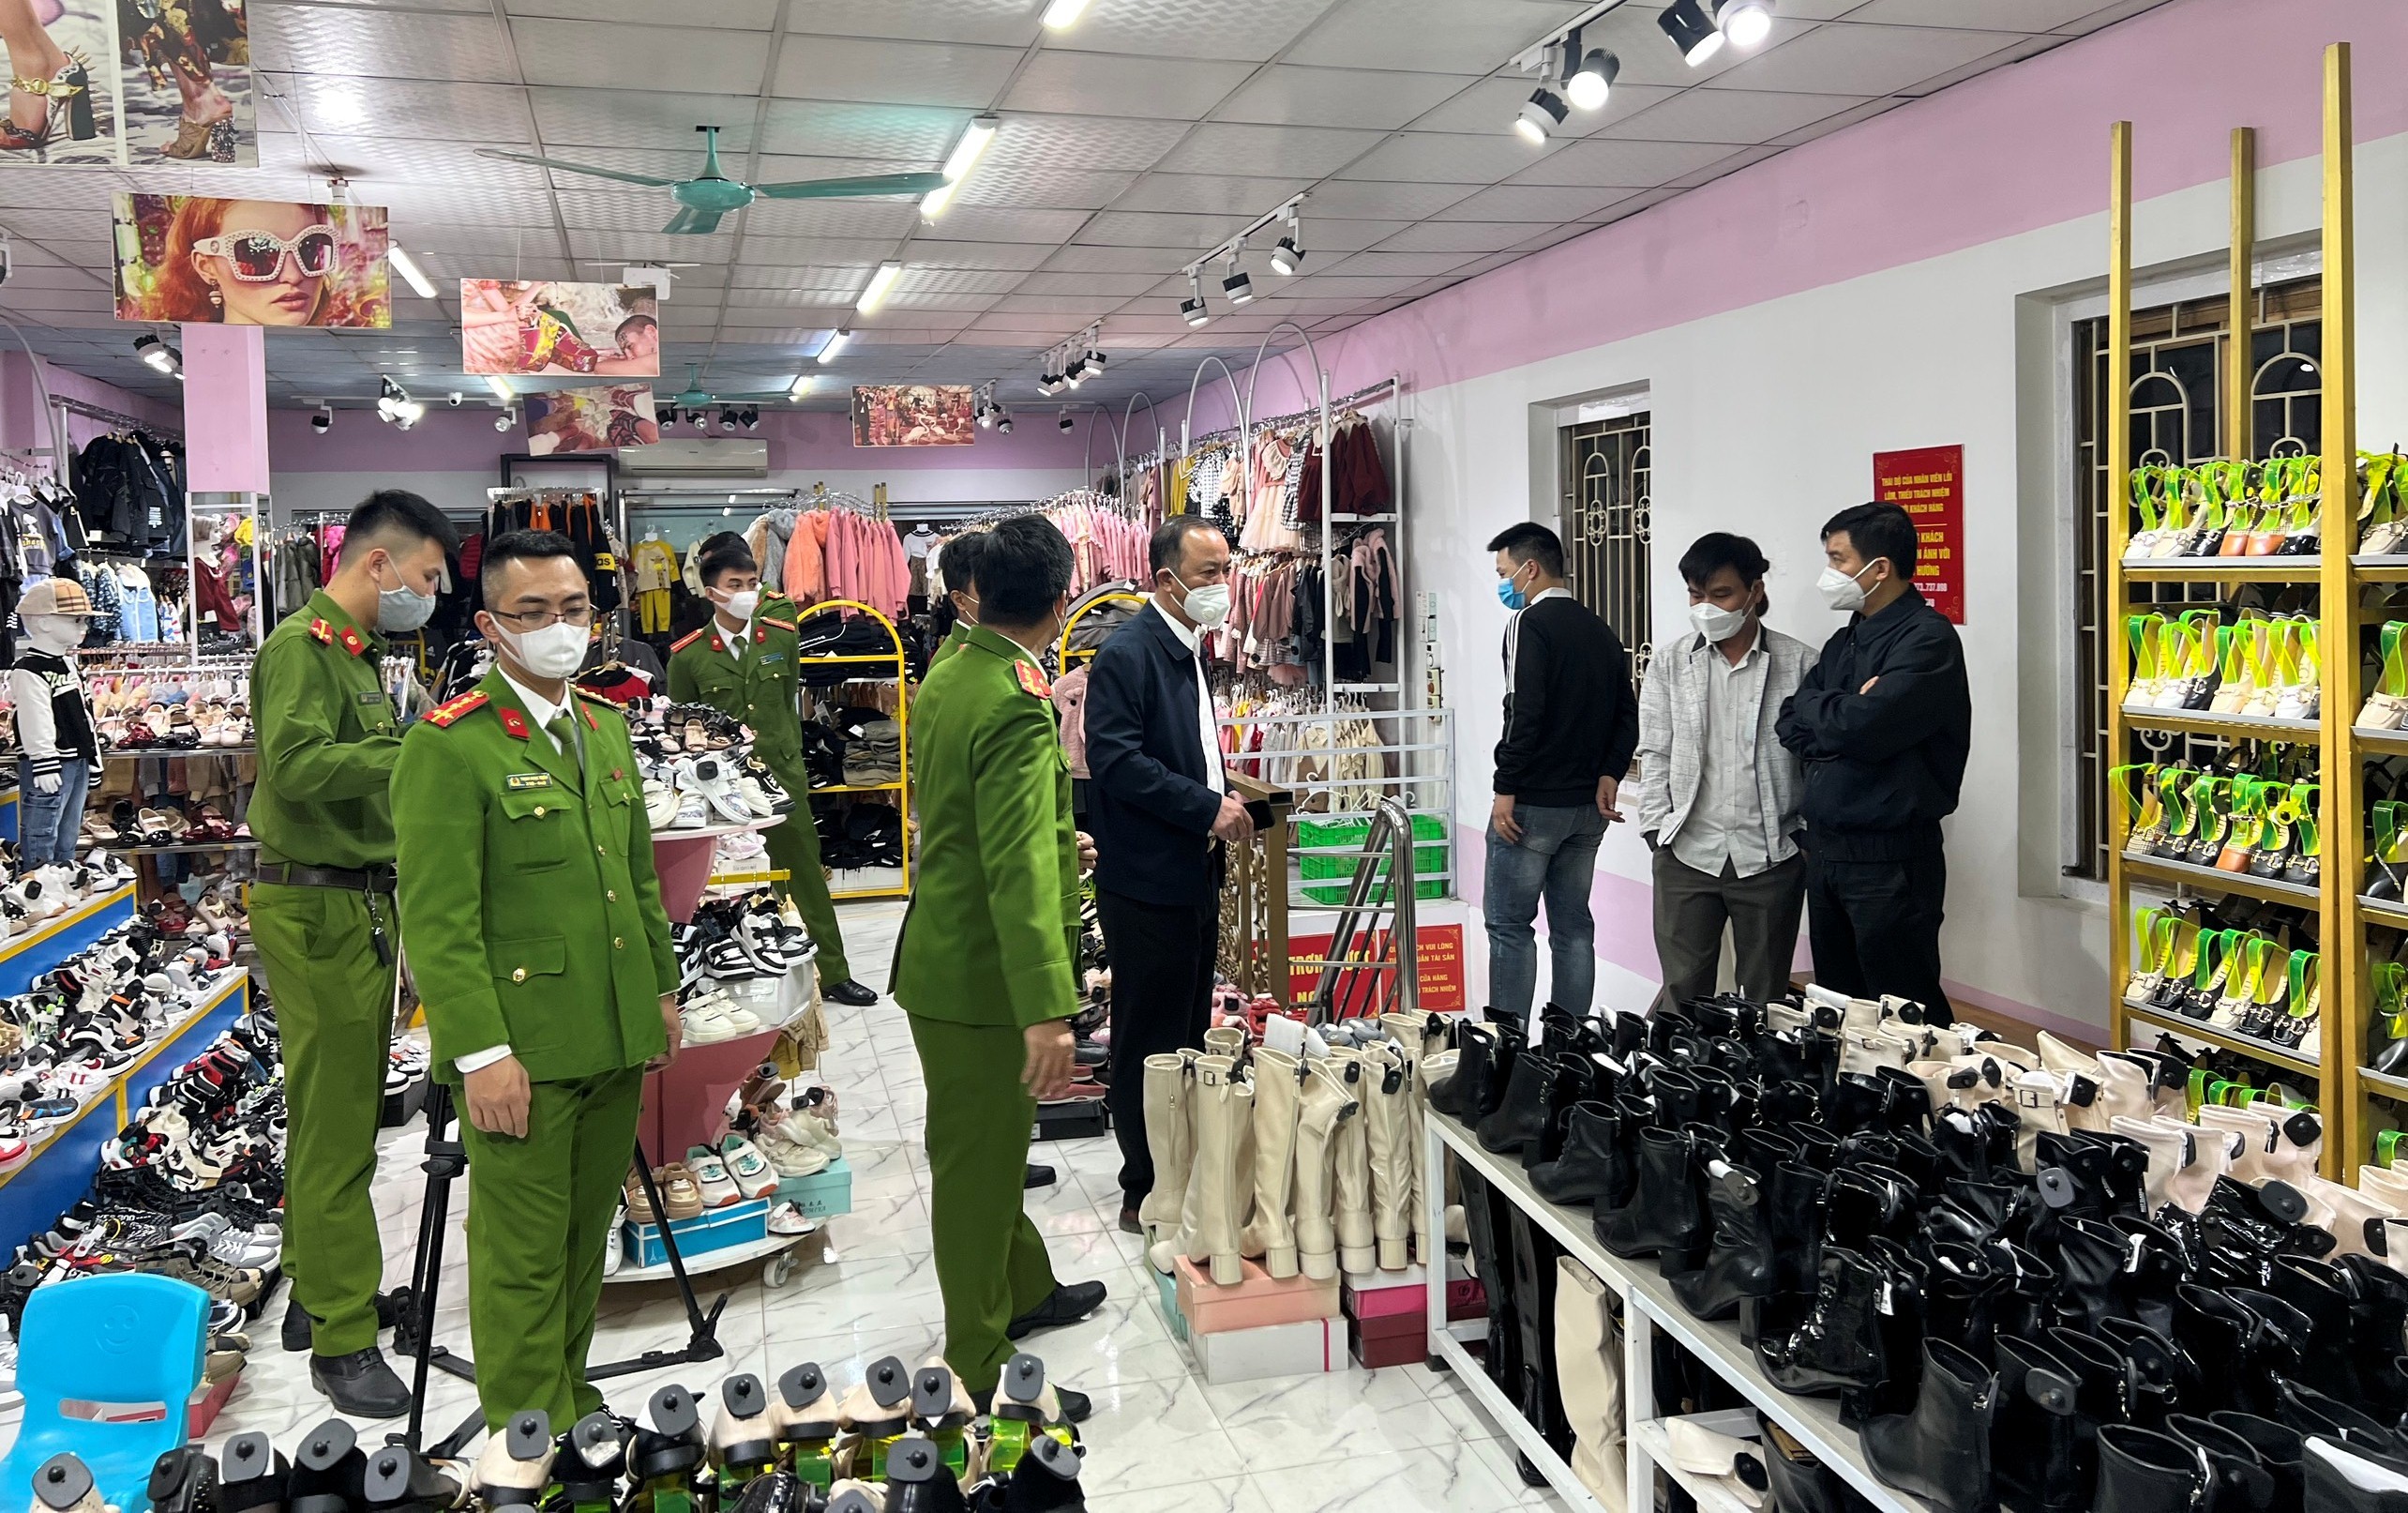 Sau khi bị phát hiện tạm giữ toàn bộ hàng hóa của cửa hàng Mai Hương tại Thanh Hóa